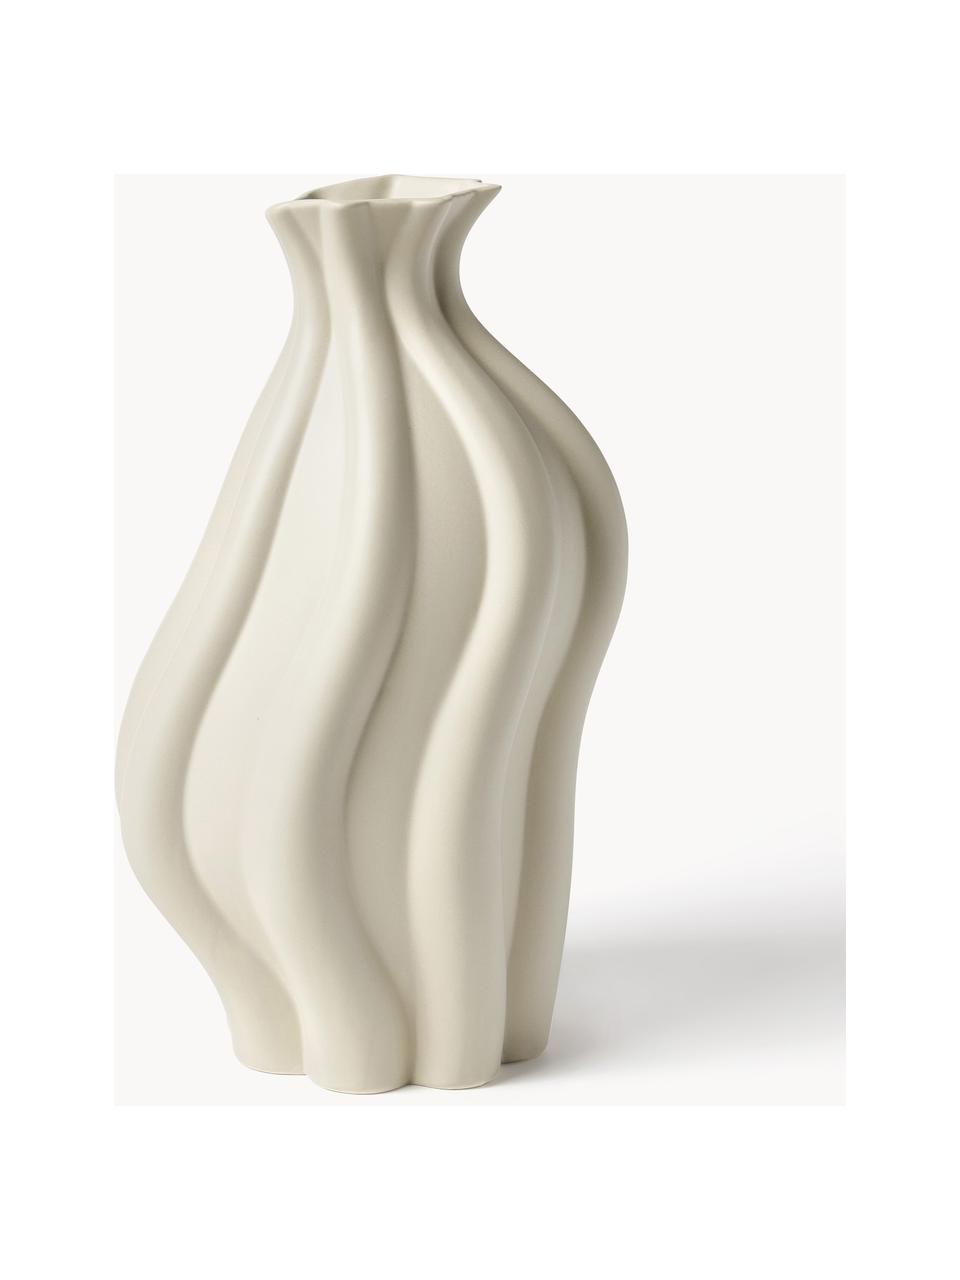 Vase Blom aus Keramik, H 33 cm, Keramik, Beige, B 19 x H 33 cm